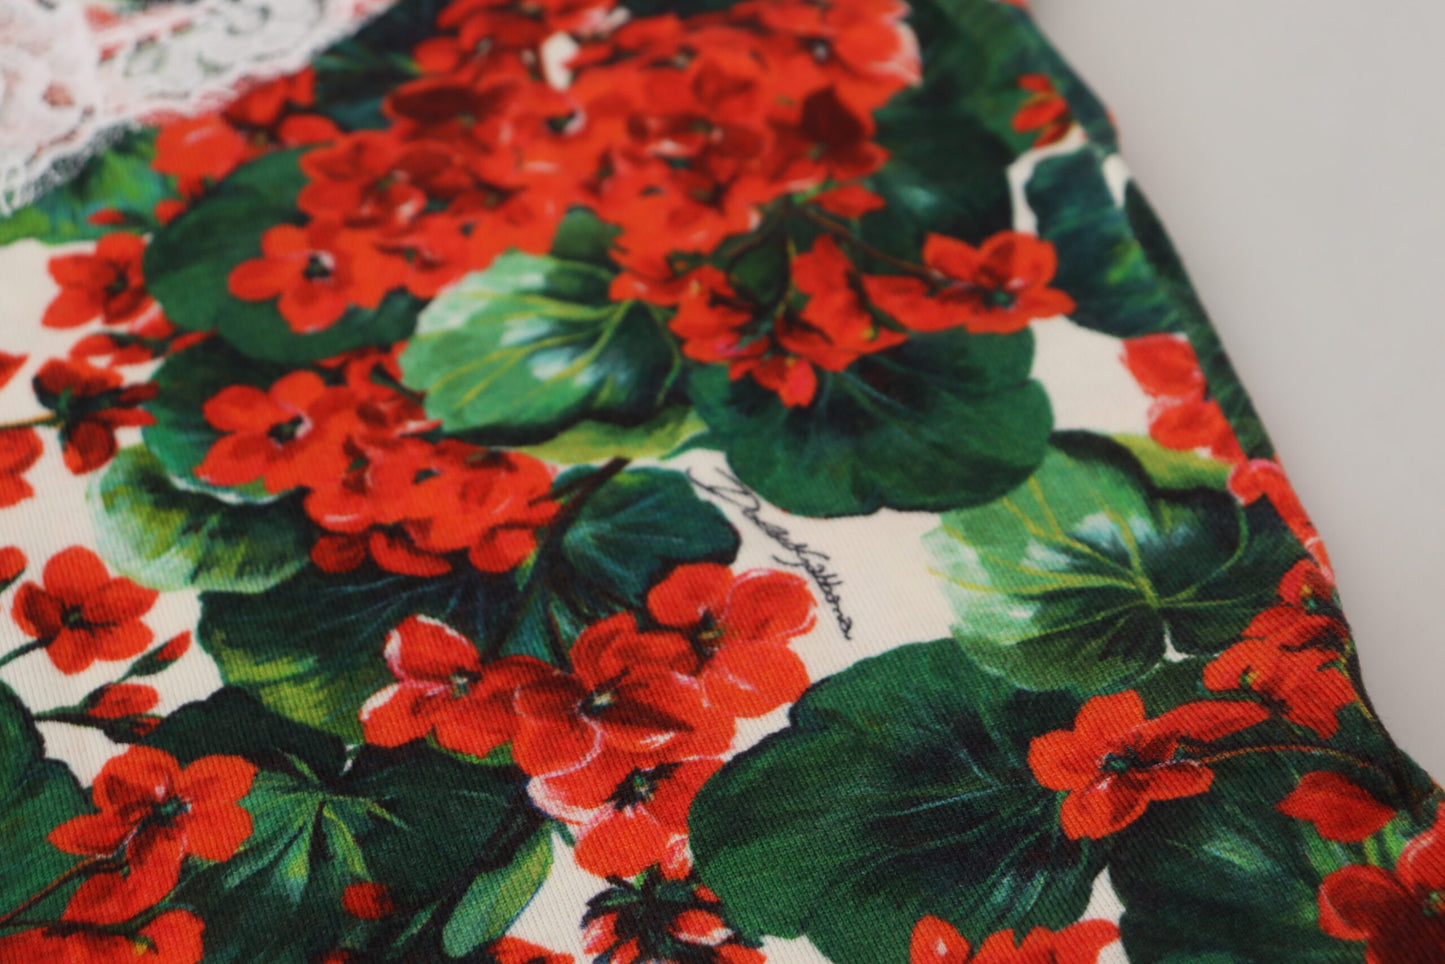 Chic Floral Print Tank Top Vest